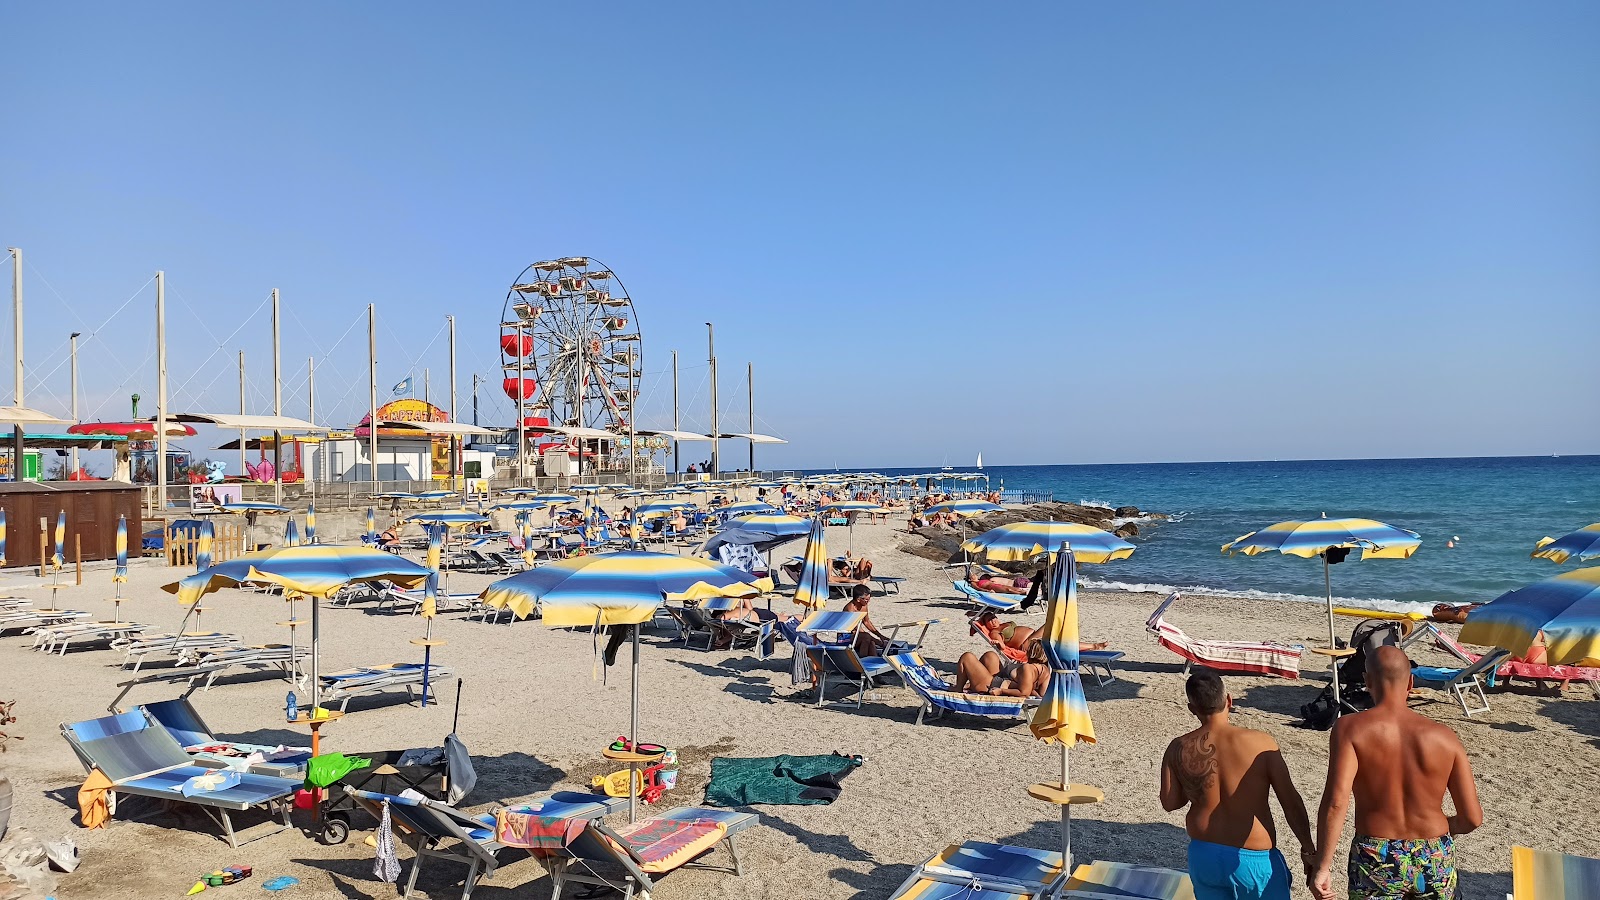 Foto de Spiaggia di Borghetto - lugar popular entre los conocedores del relax